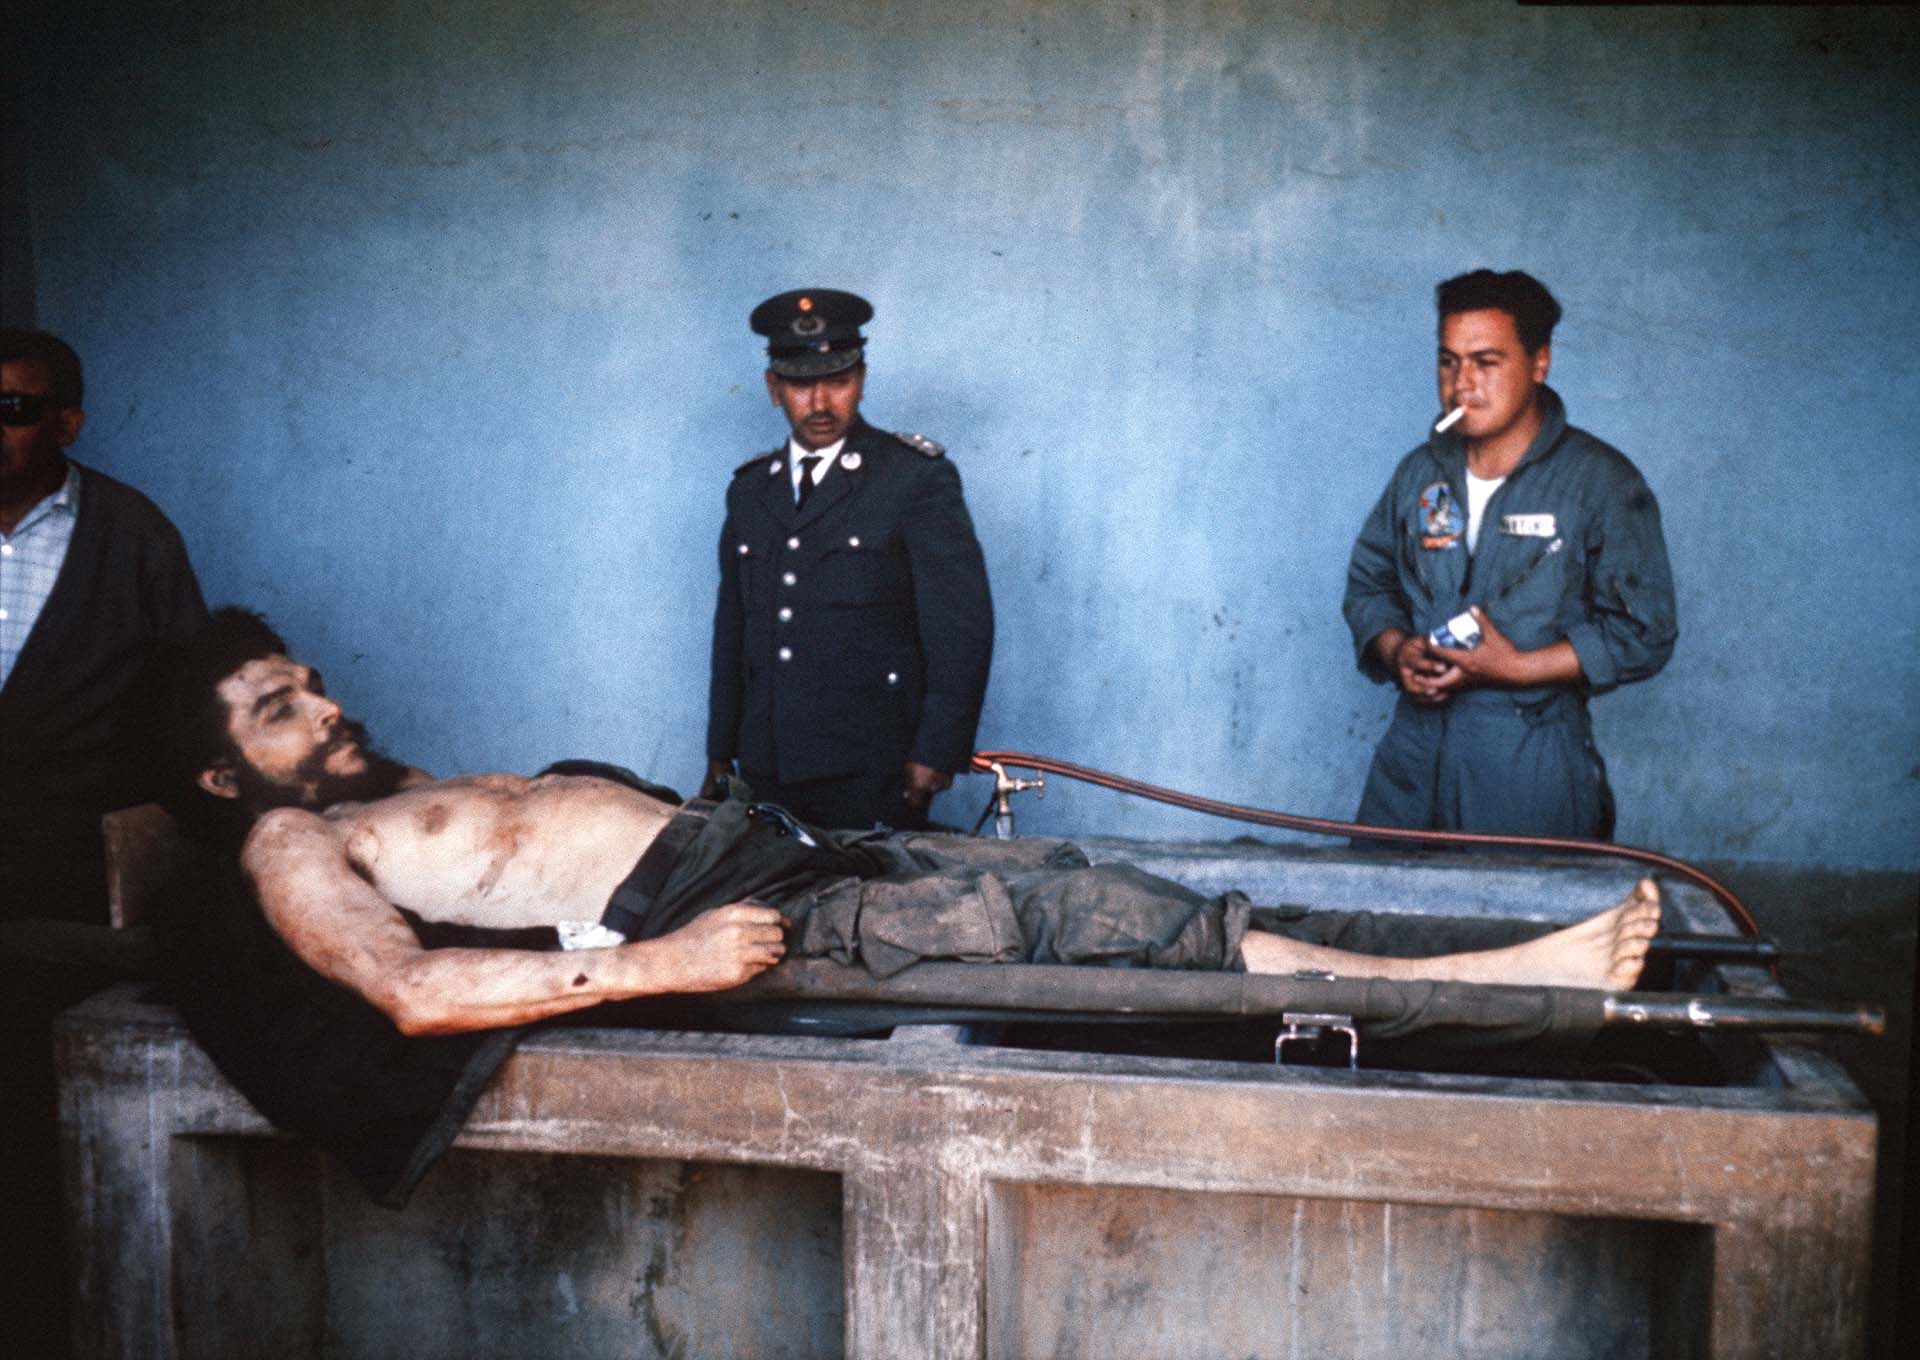 Fotos de archivo tomadas el 10 de octubre de 1967 por el periodista de la AFP Marc Hutten del cuerpo de Ernesto "Che" Guevara siendo expuesto en un lavadero en el pueblo de Vallegrande, Bolivia (FOTO AFP / MARC HUTTEN)